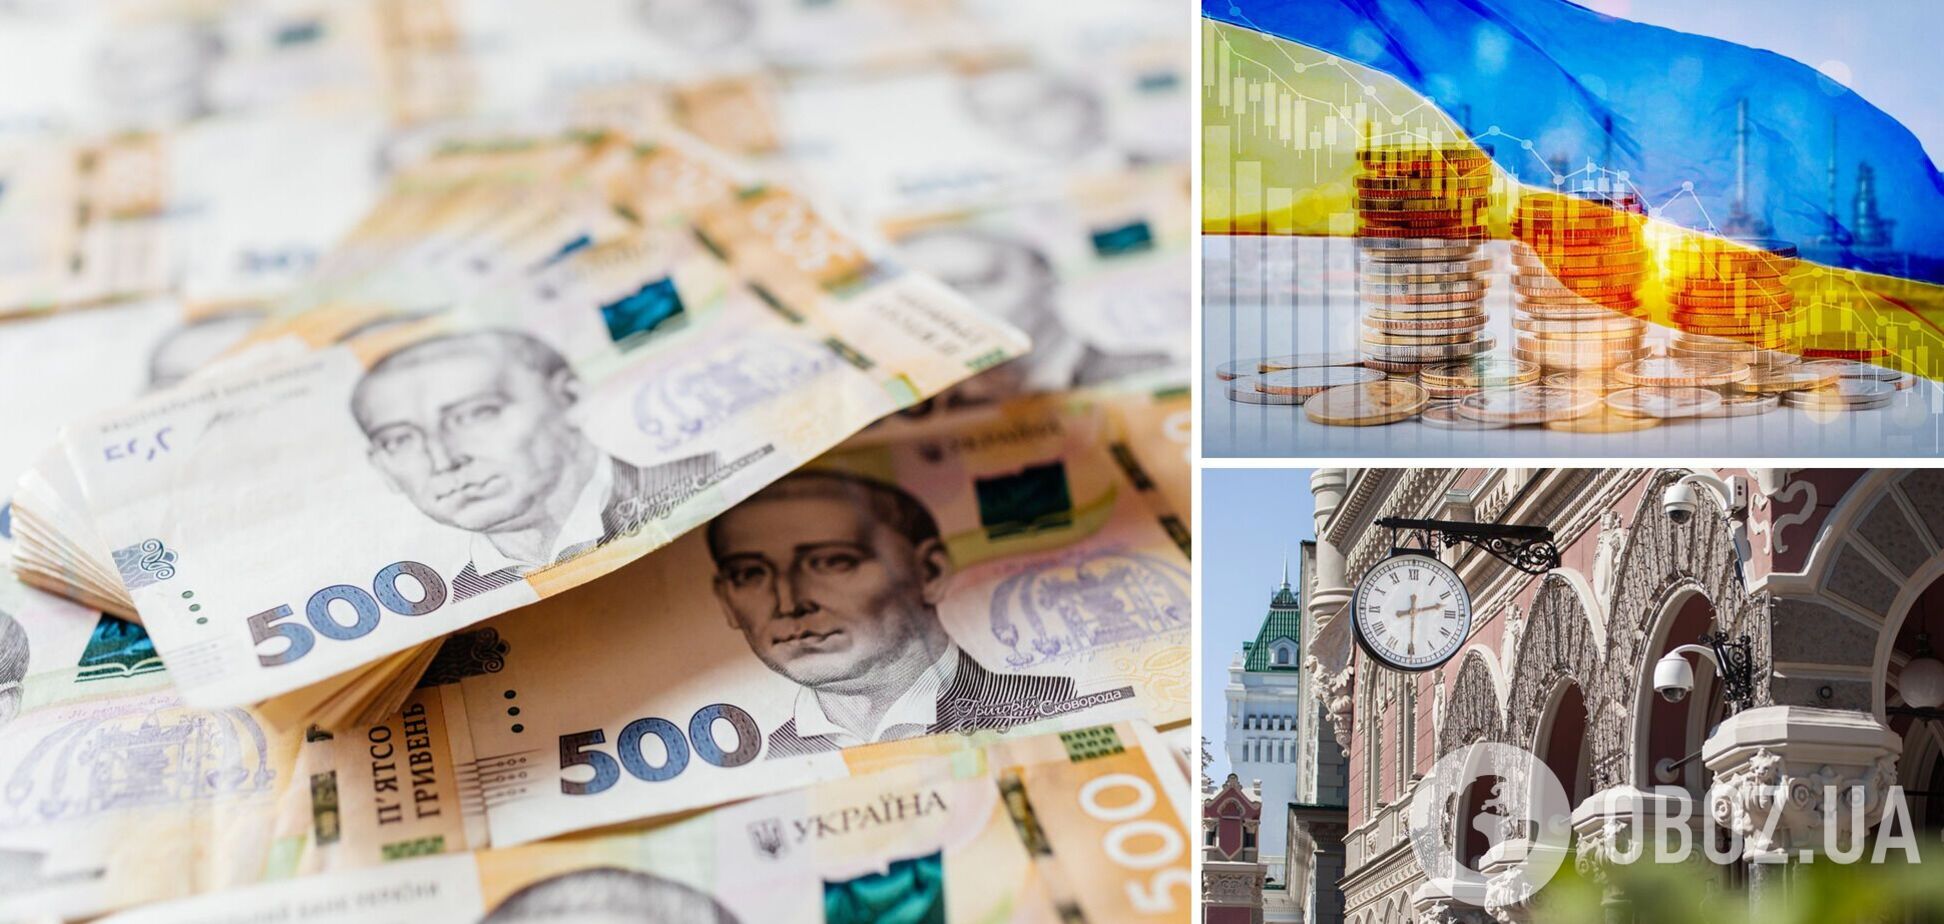 НБУ дал прогнозы для украинской экономики